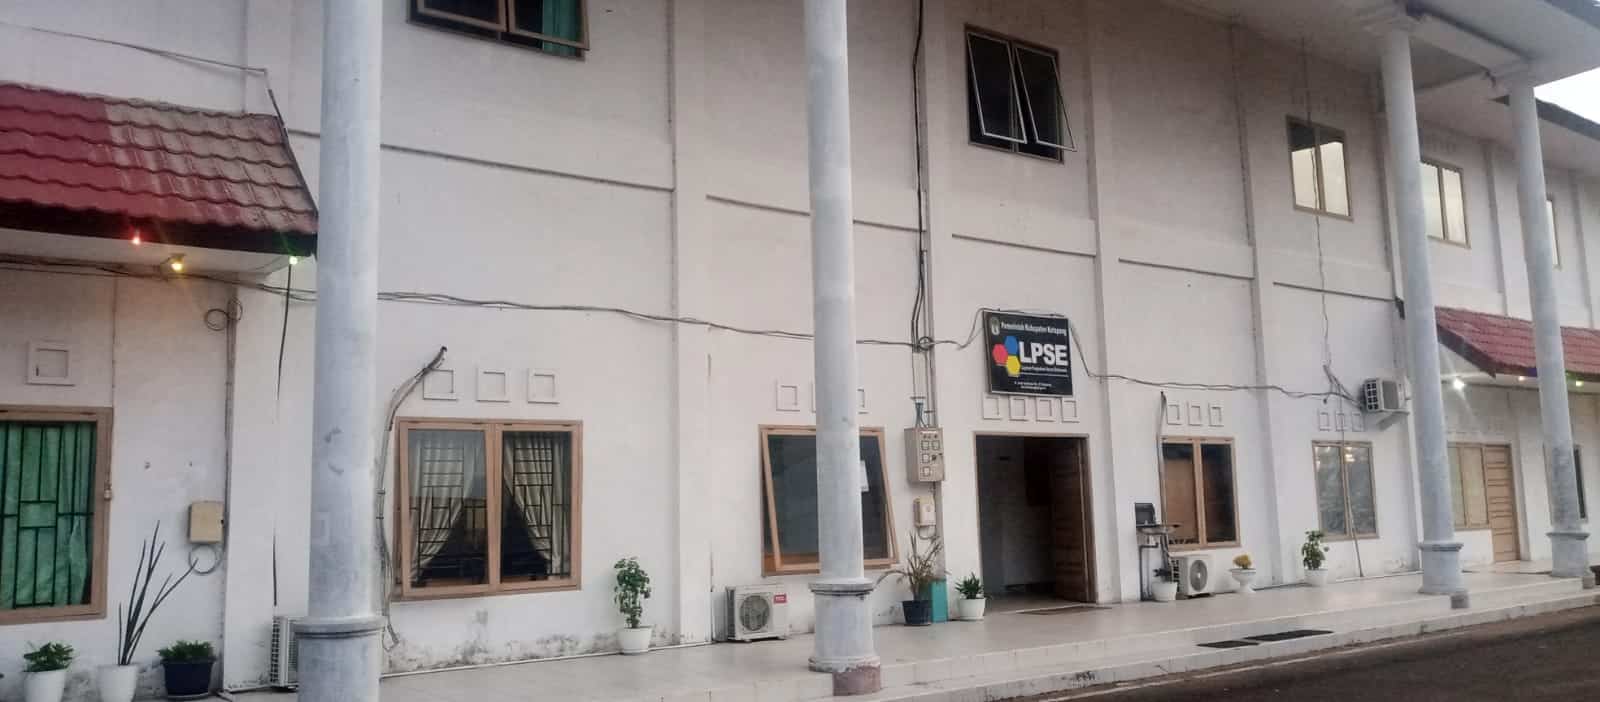 Suasana Gedung LPSE Ketapang yang terletak di komplek Kantor Bupati Ketapang, tampak sepi dari aktivitas sekitar pukul 17.17 Wib. (Foto: Adi LC/KalbarOnline.com)